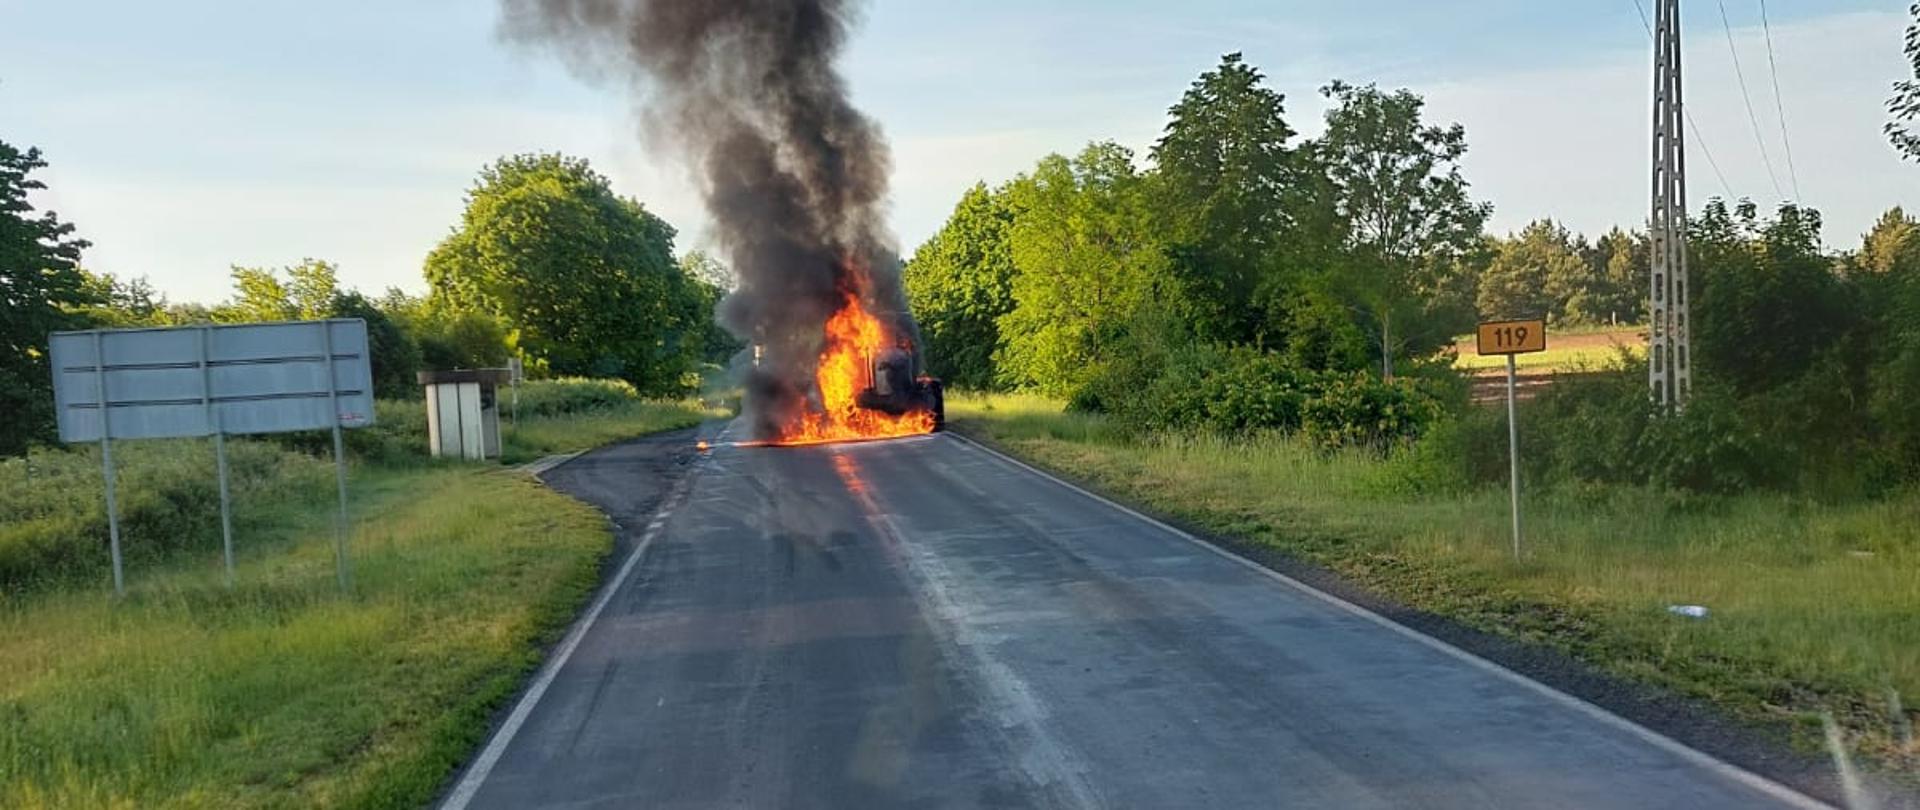 Zdjęcie przedstawia pożar harwestera na drodze.